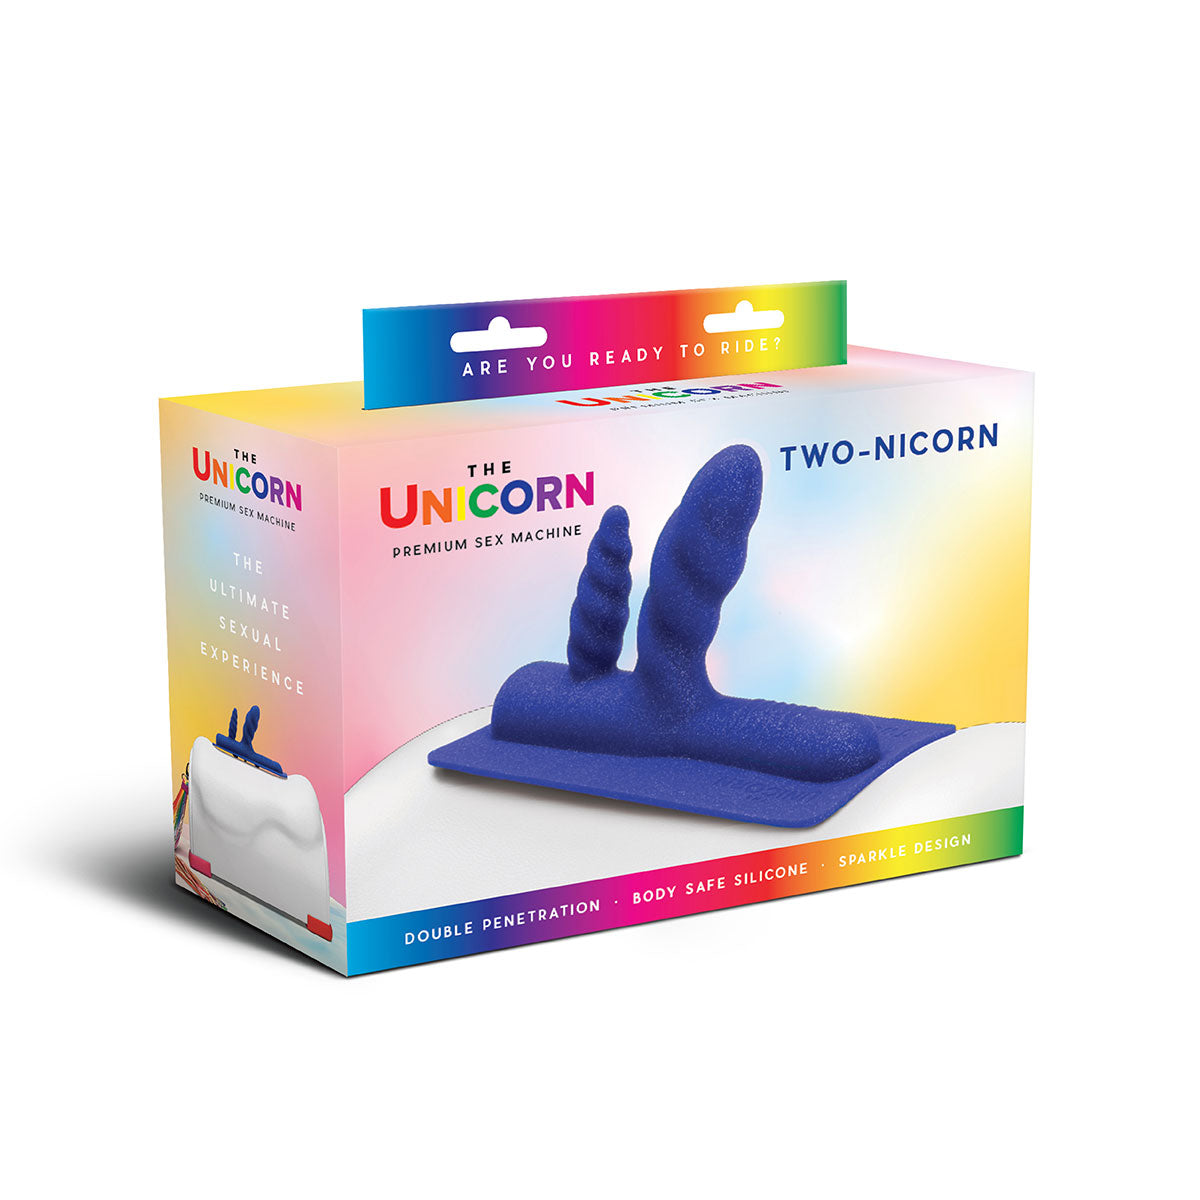 Unicorn Two-Nicorn Attachment Intimates Adult Boutique